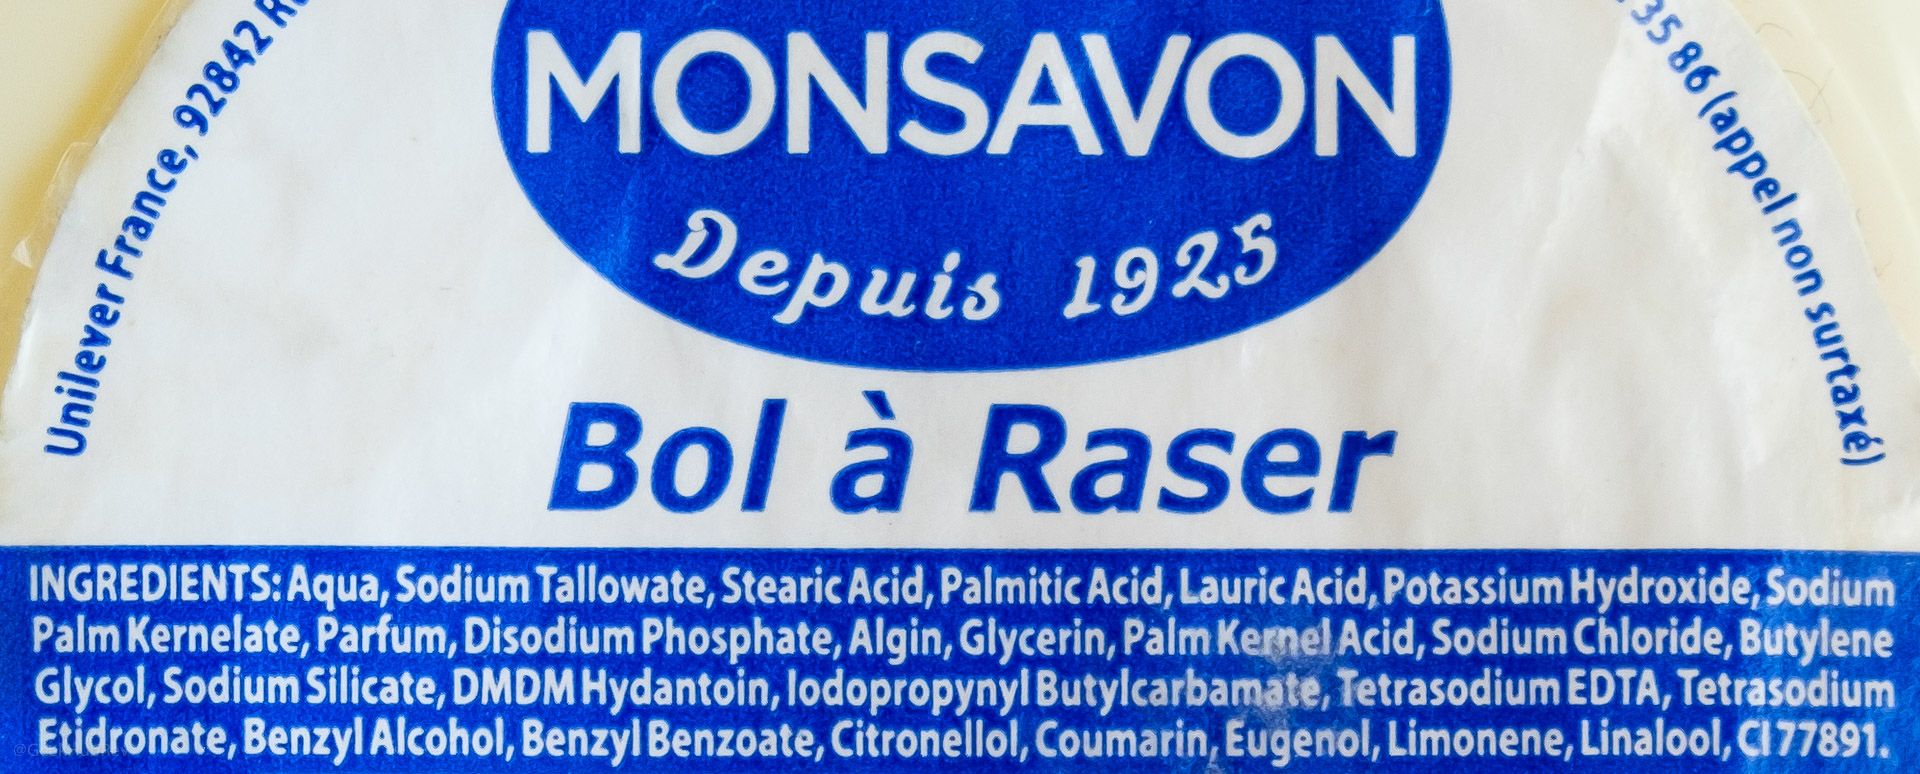 Skład mydła do golenia Monsavon Bol à Raser (INCI ingredients)